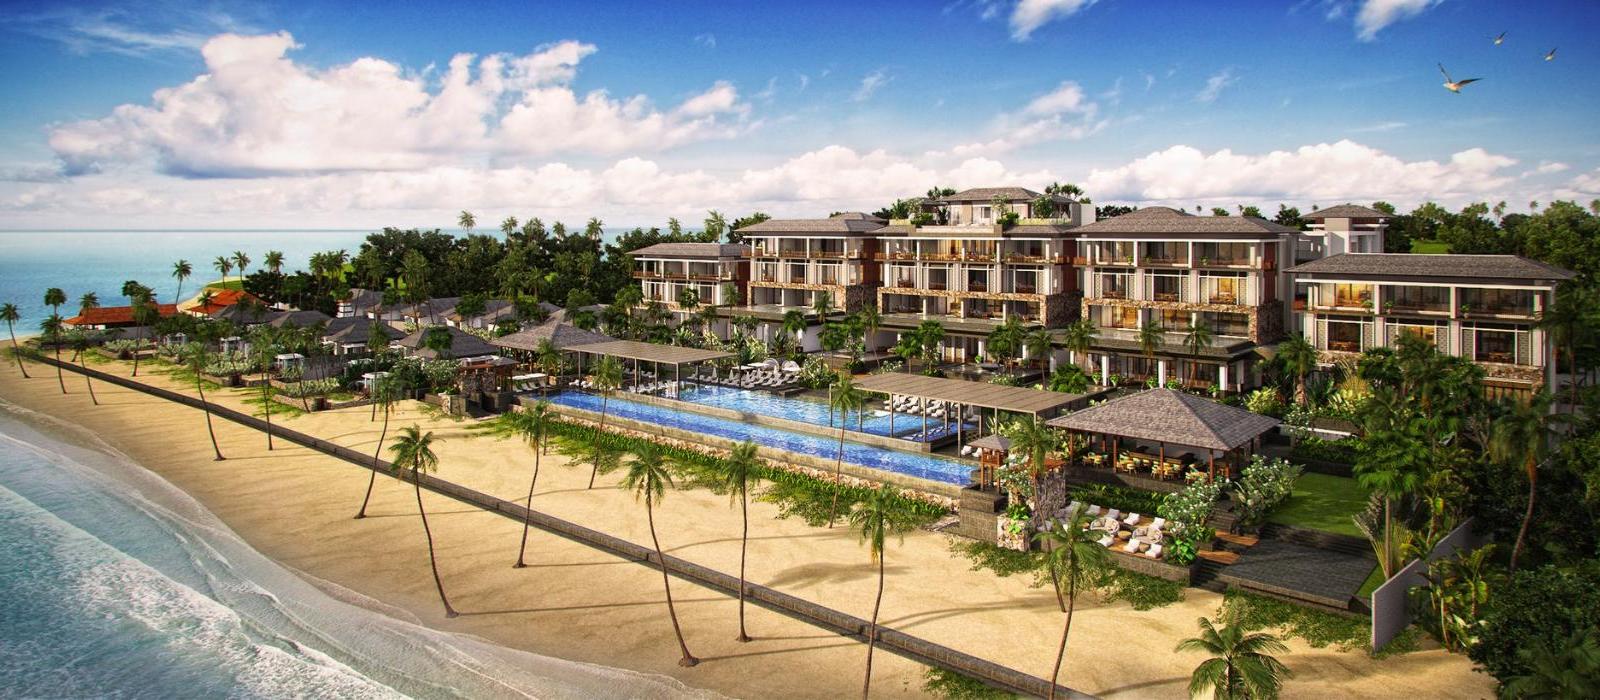 龙目岛乐吉安度假酒店(The Legian Sire, Lombok) 图片  www.lhw.cn